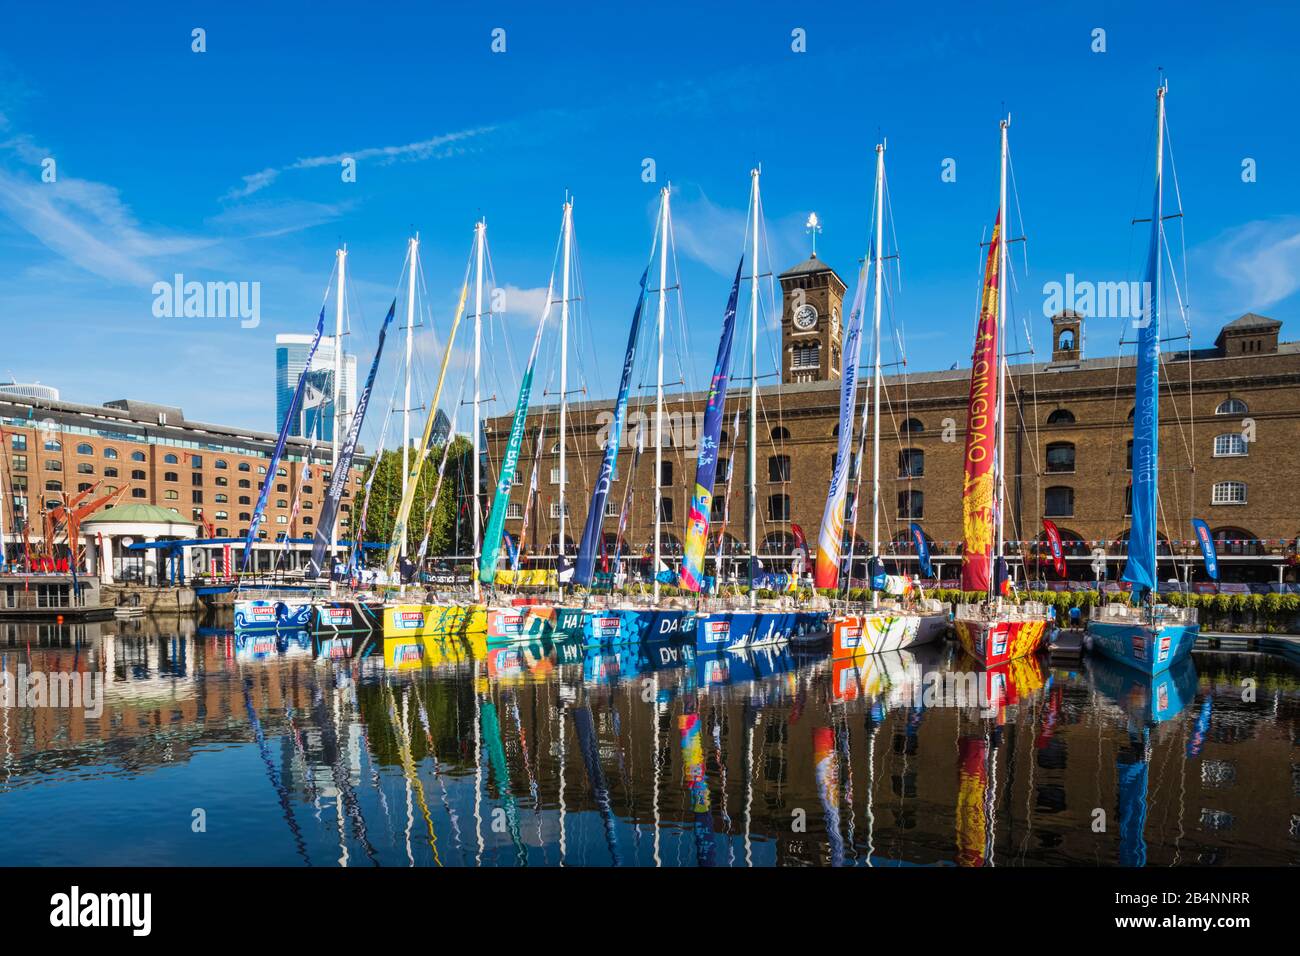 Inghilterra, Londra, Wapping, St.Katharine Docks Marina, colorato Clippers in attesa di avvio dell'Bi-Annual Clipper il giro del mondo in barca a vela Foto Stock